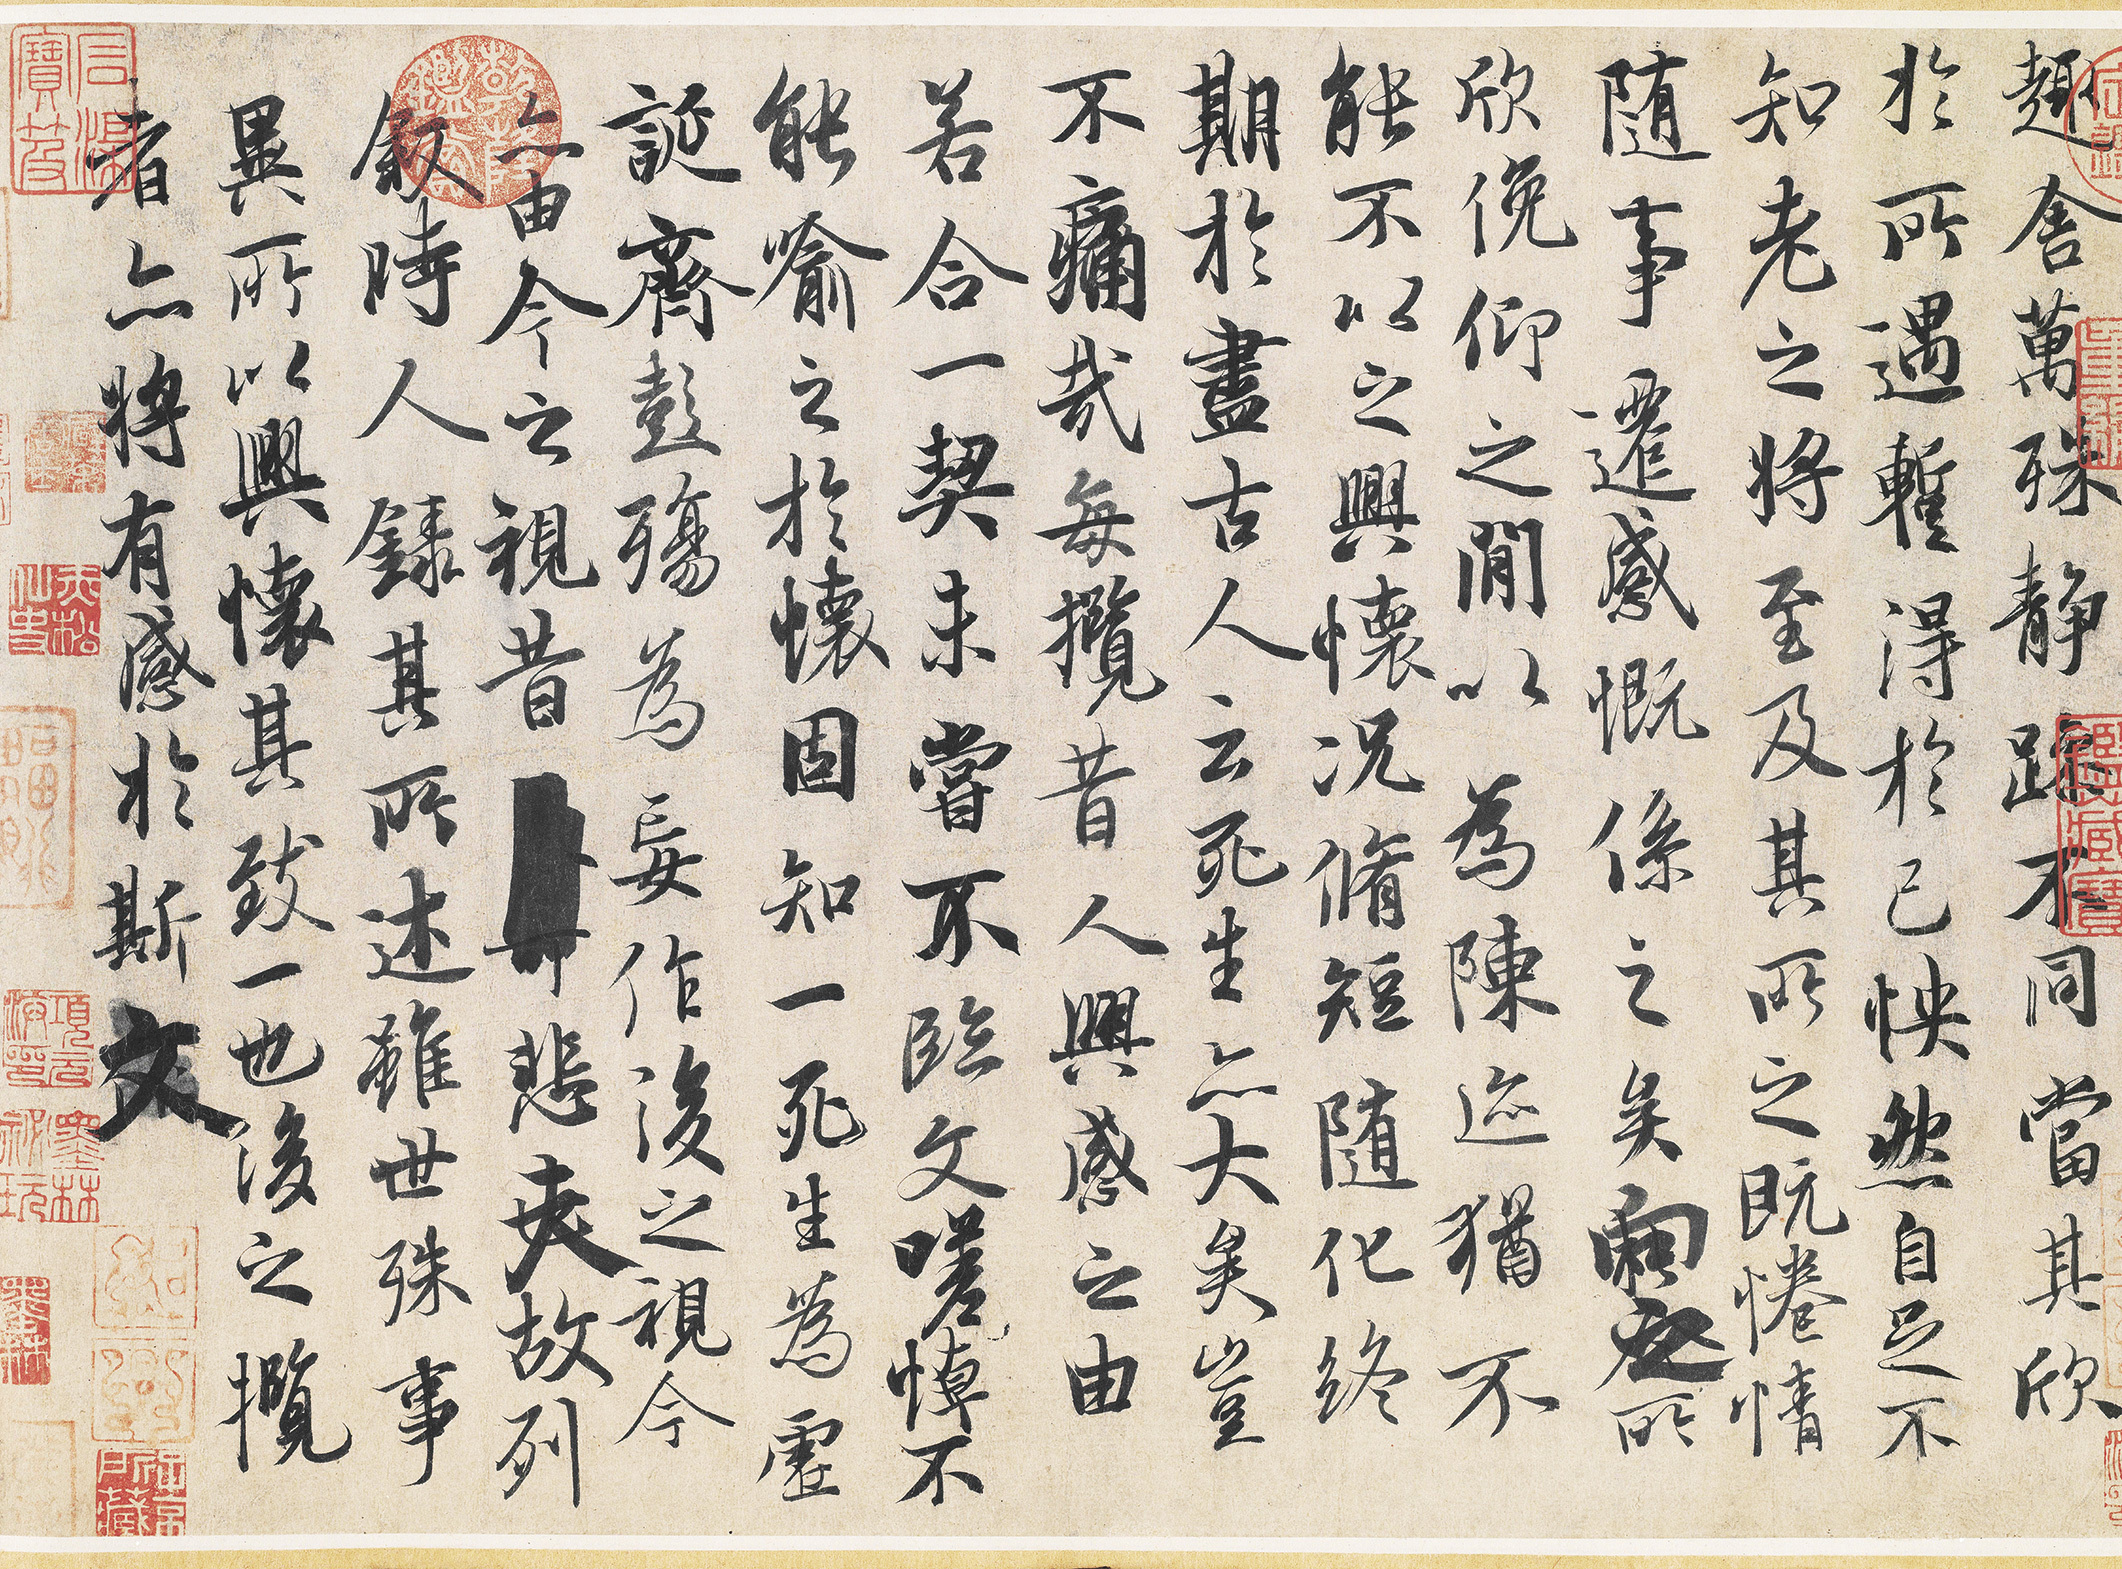 珍藏版:中国历史上造诣最深的十大书法家及其代表作